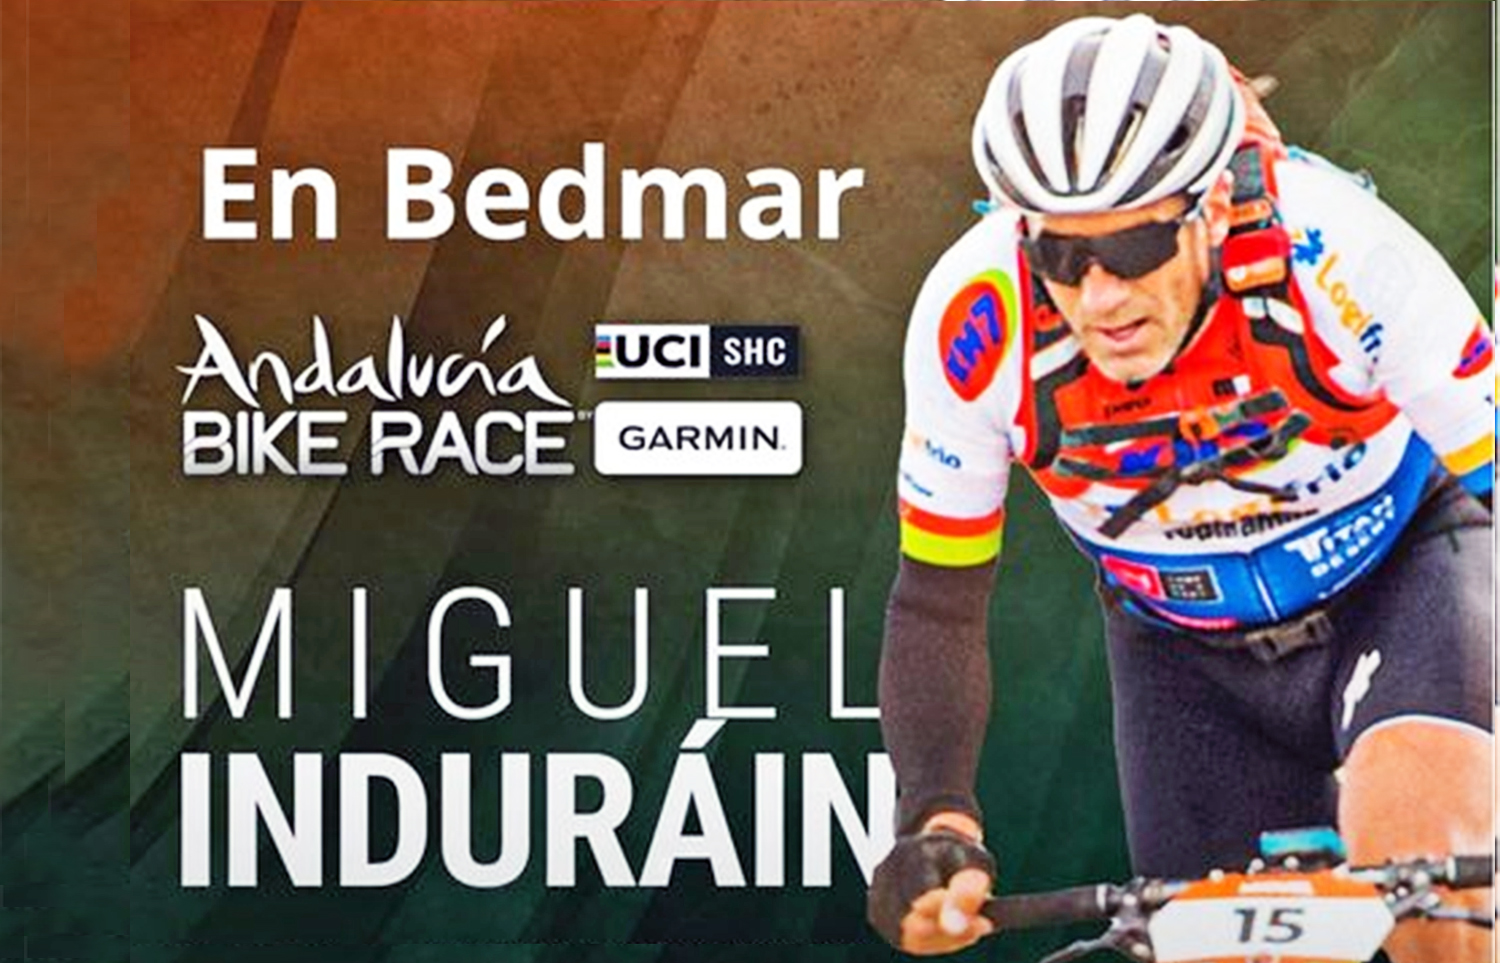 El mítico ciclista Miguel Induráin estará en la primera etapa de la Andalucía Bike Race que se desarrollará en Bedmar el próximo lunes 26